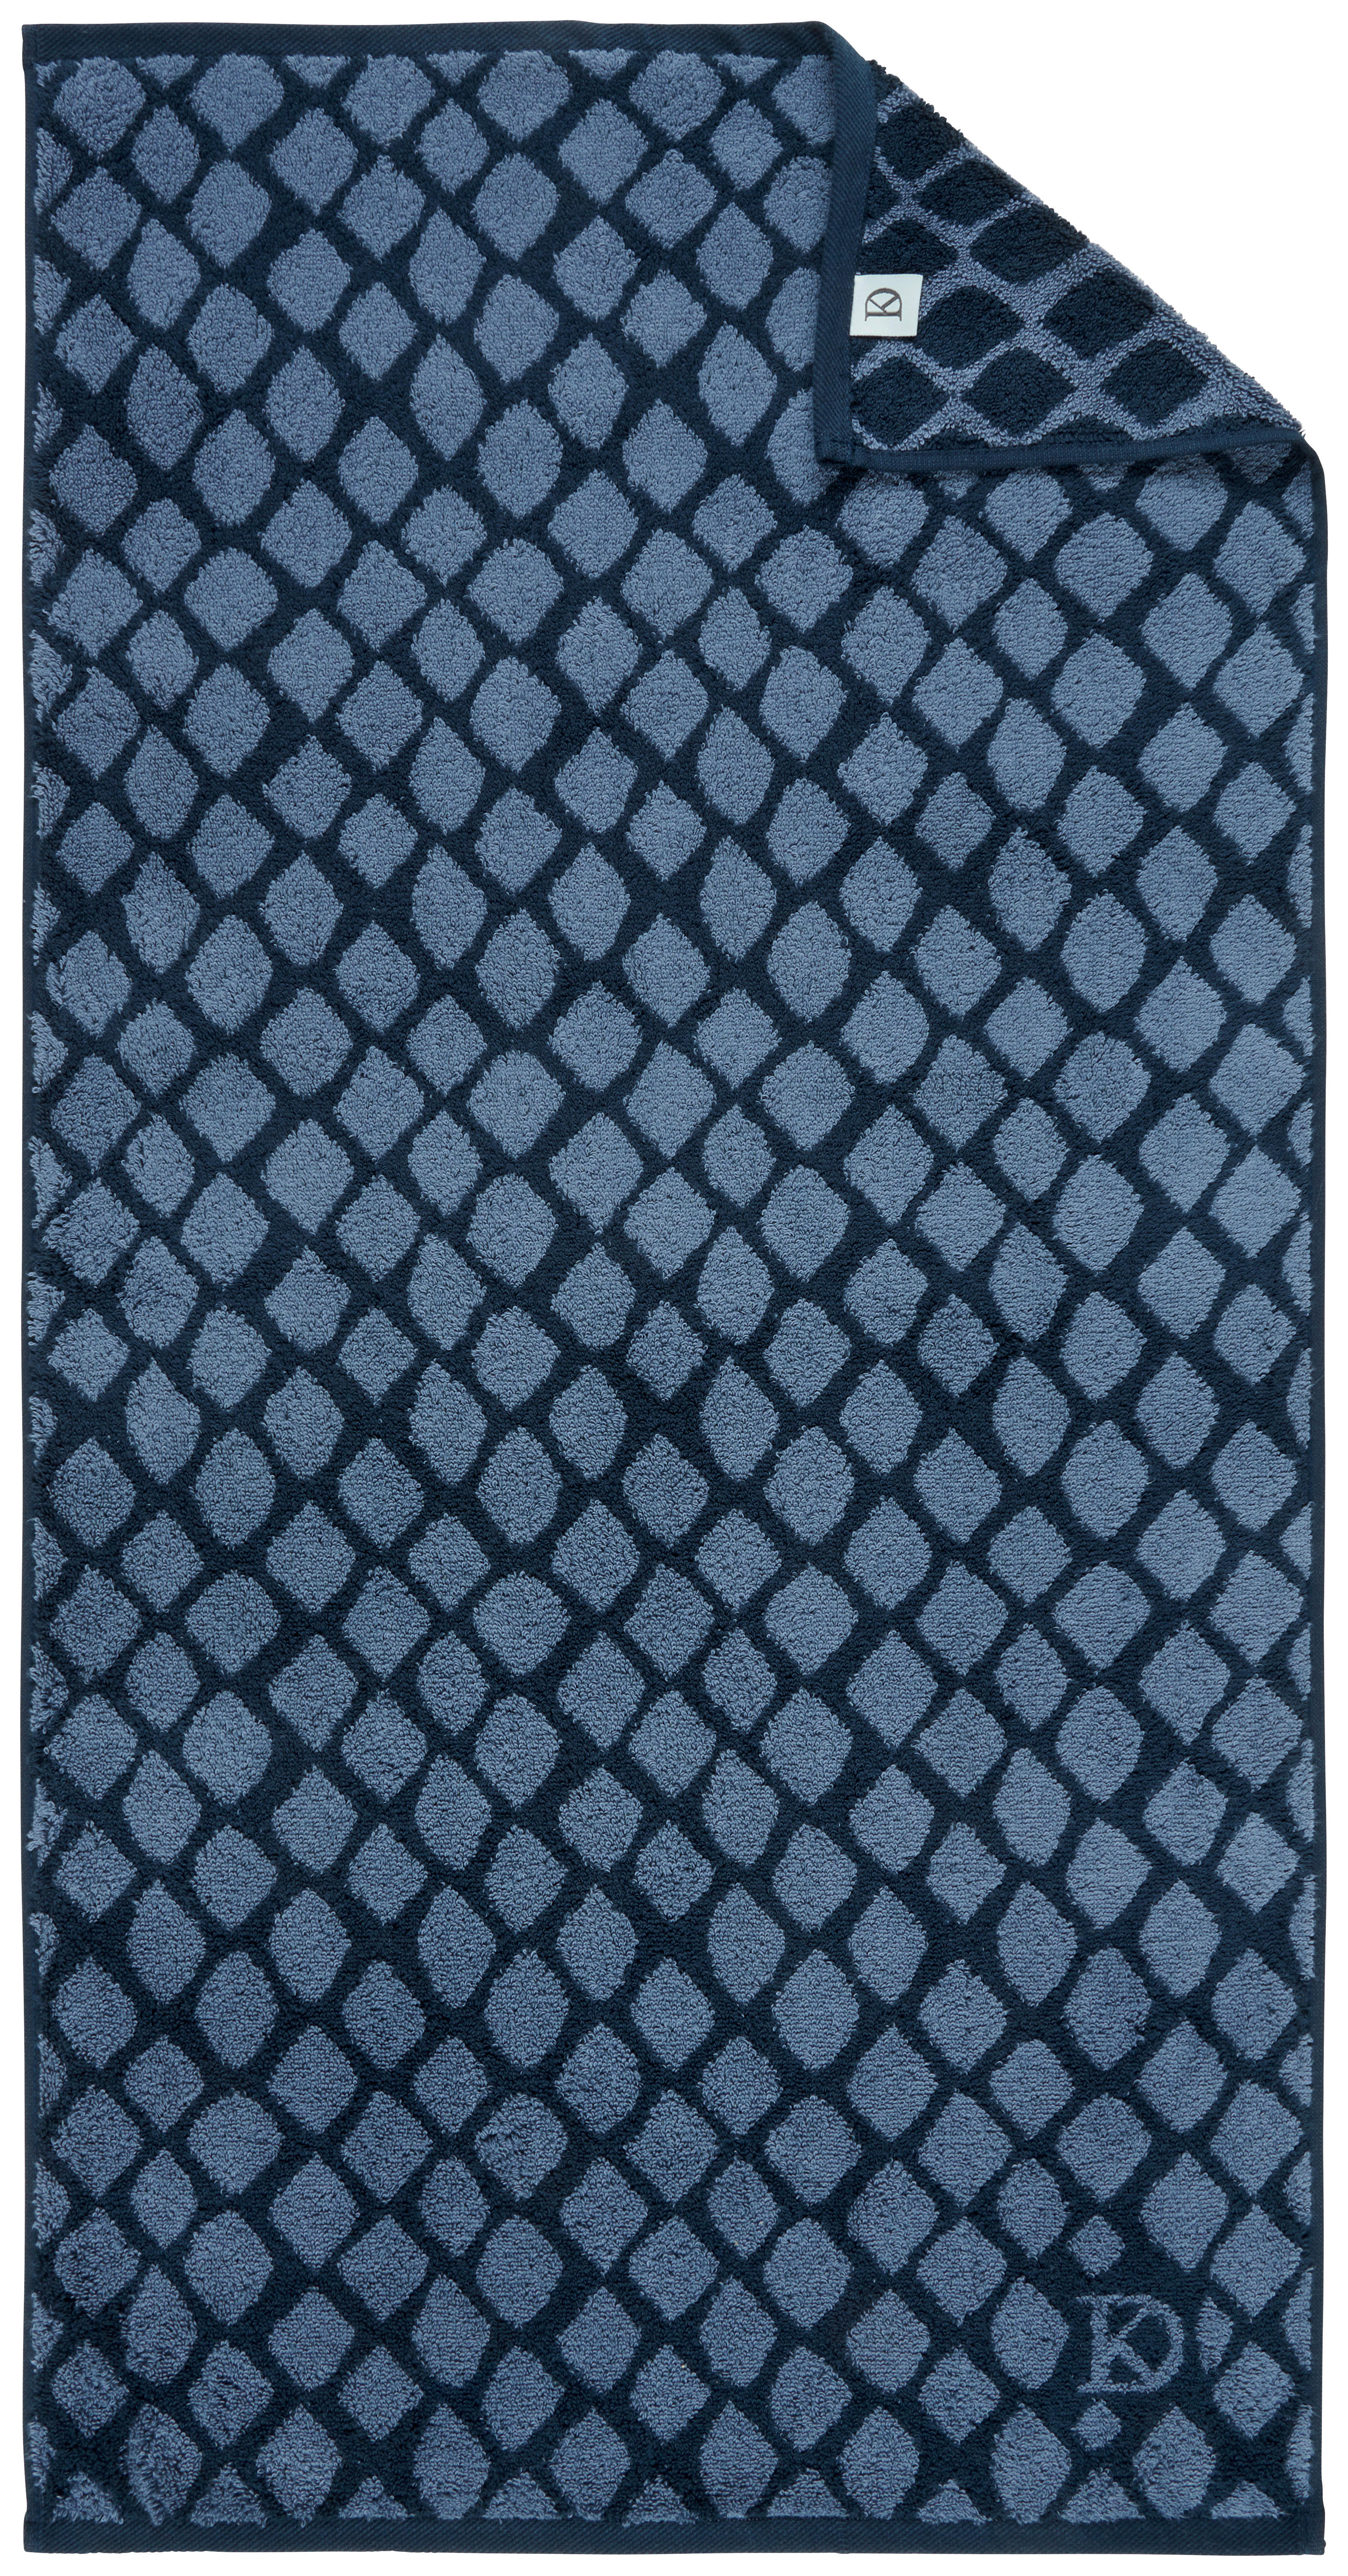 UTERÁK NA RUKY, 50/100 cm, modrá, tmavomodrá - modrá/tmavomodrá, Design, textil (50/100cm) - Dieter Knoll